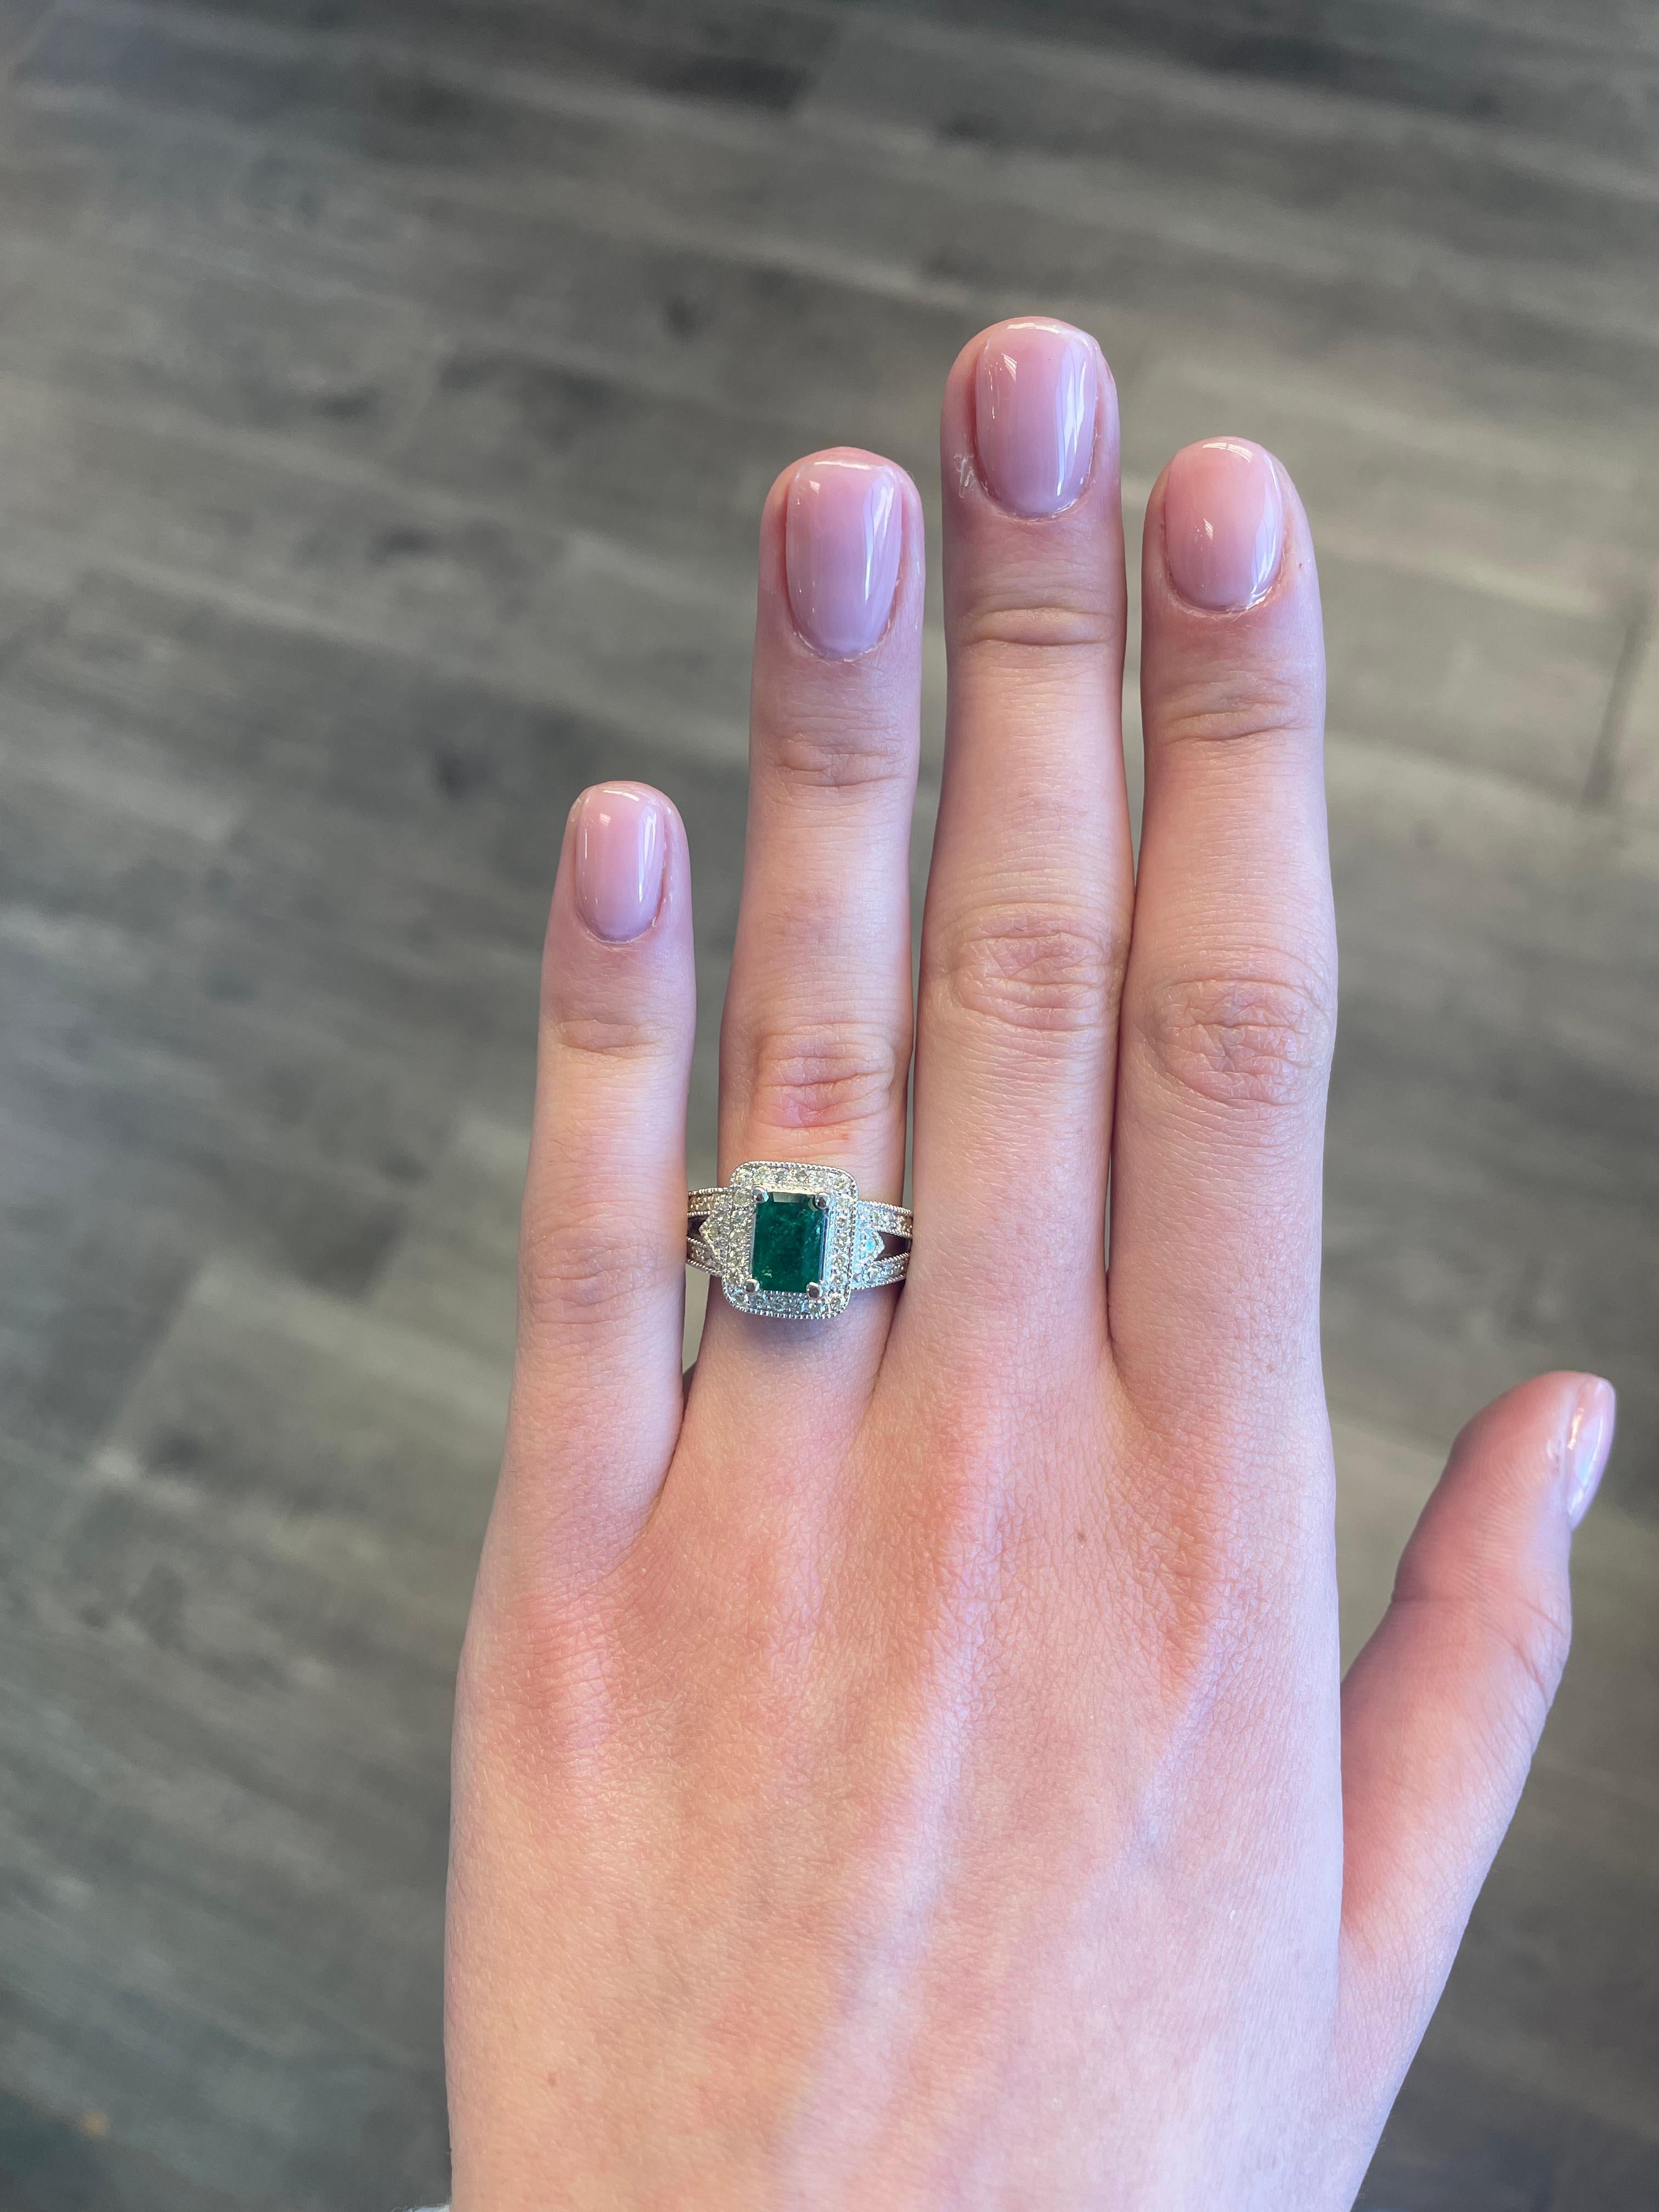 Art Deco inspirierter Smaragd- und Diamant-Halo-Ring mit geteiltem Schaft, filigraner Millgrain-Arbeit.
1,73 Karat Gesamtgewicht der Edelsteine.
1,03 Karat Smaragd im Smaragdschliff, ca. F2. Ergänzt durch runde Diamanten von 0,70 Karat, Farbe ca.